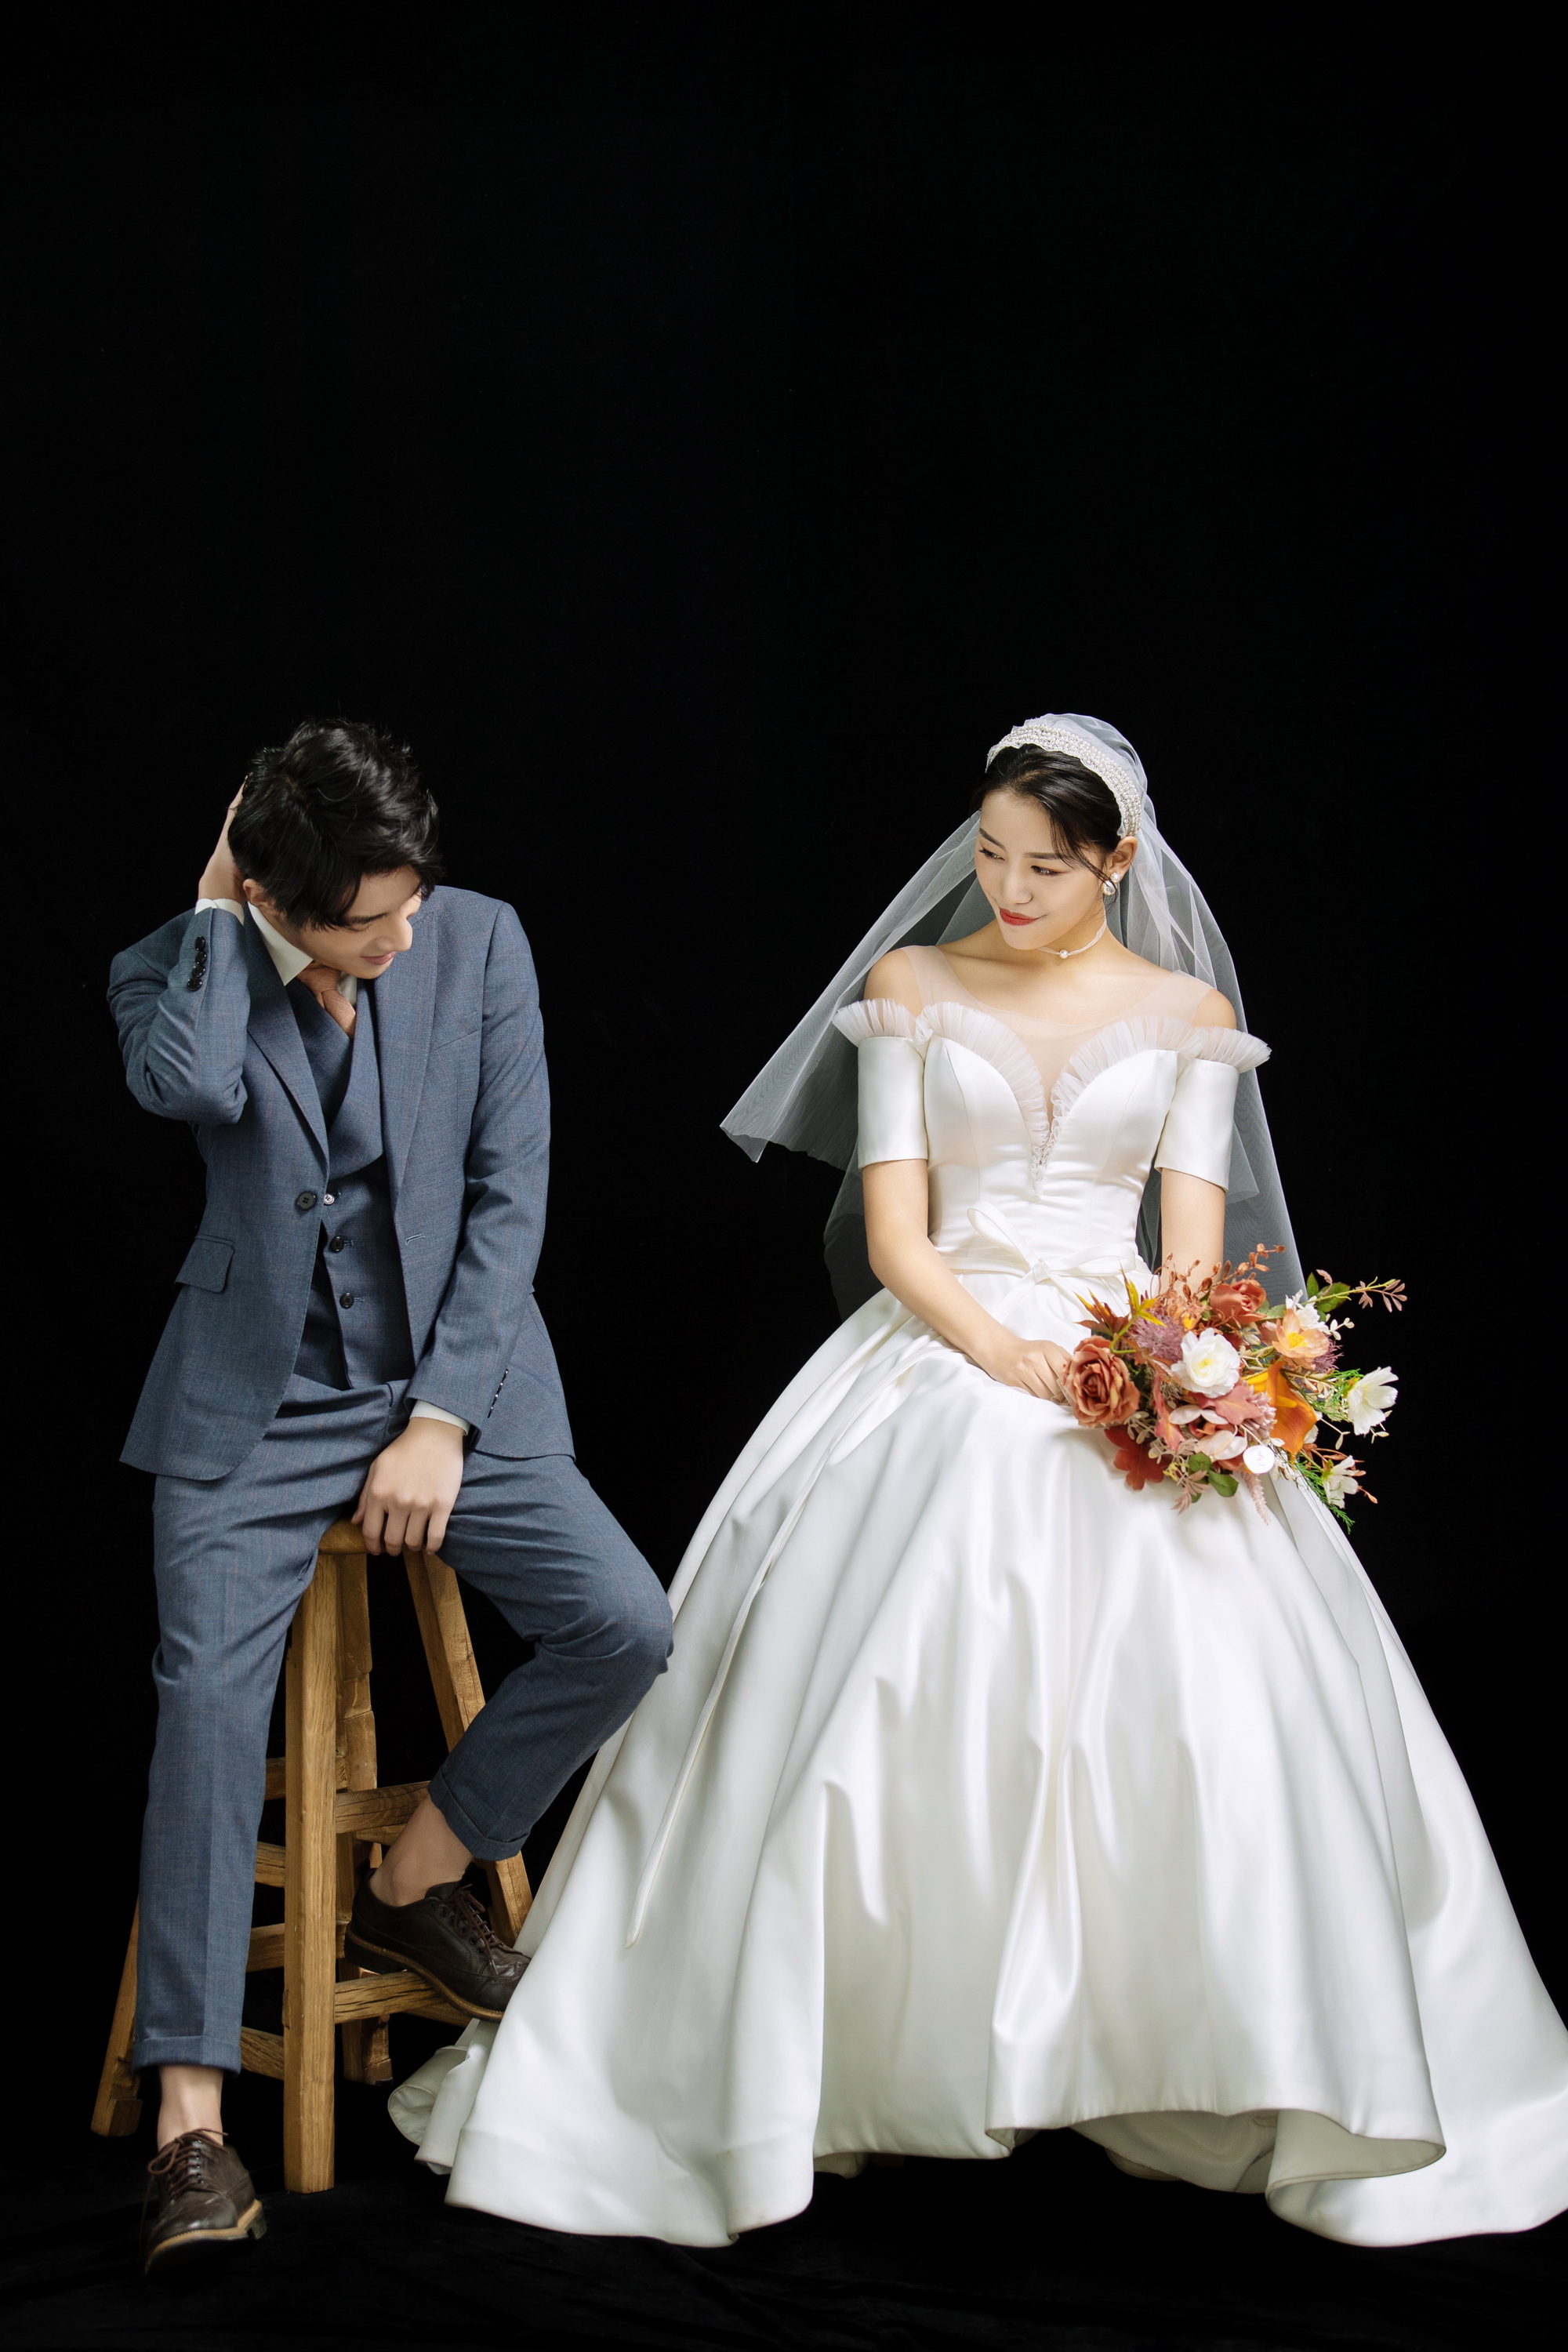 子沐映画摄影:拍婚纱照该如何选择自己适合的婚纱?